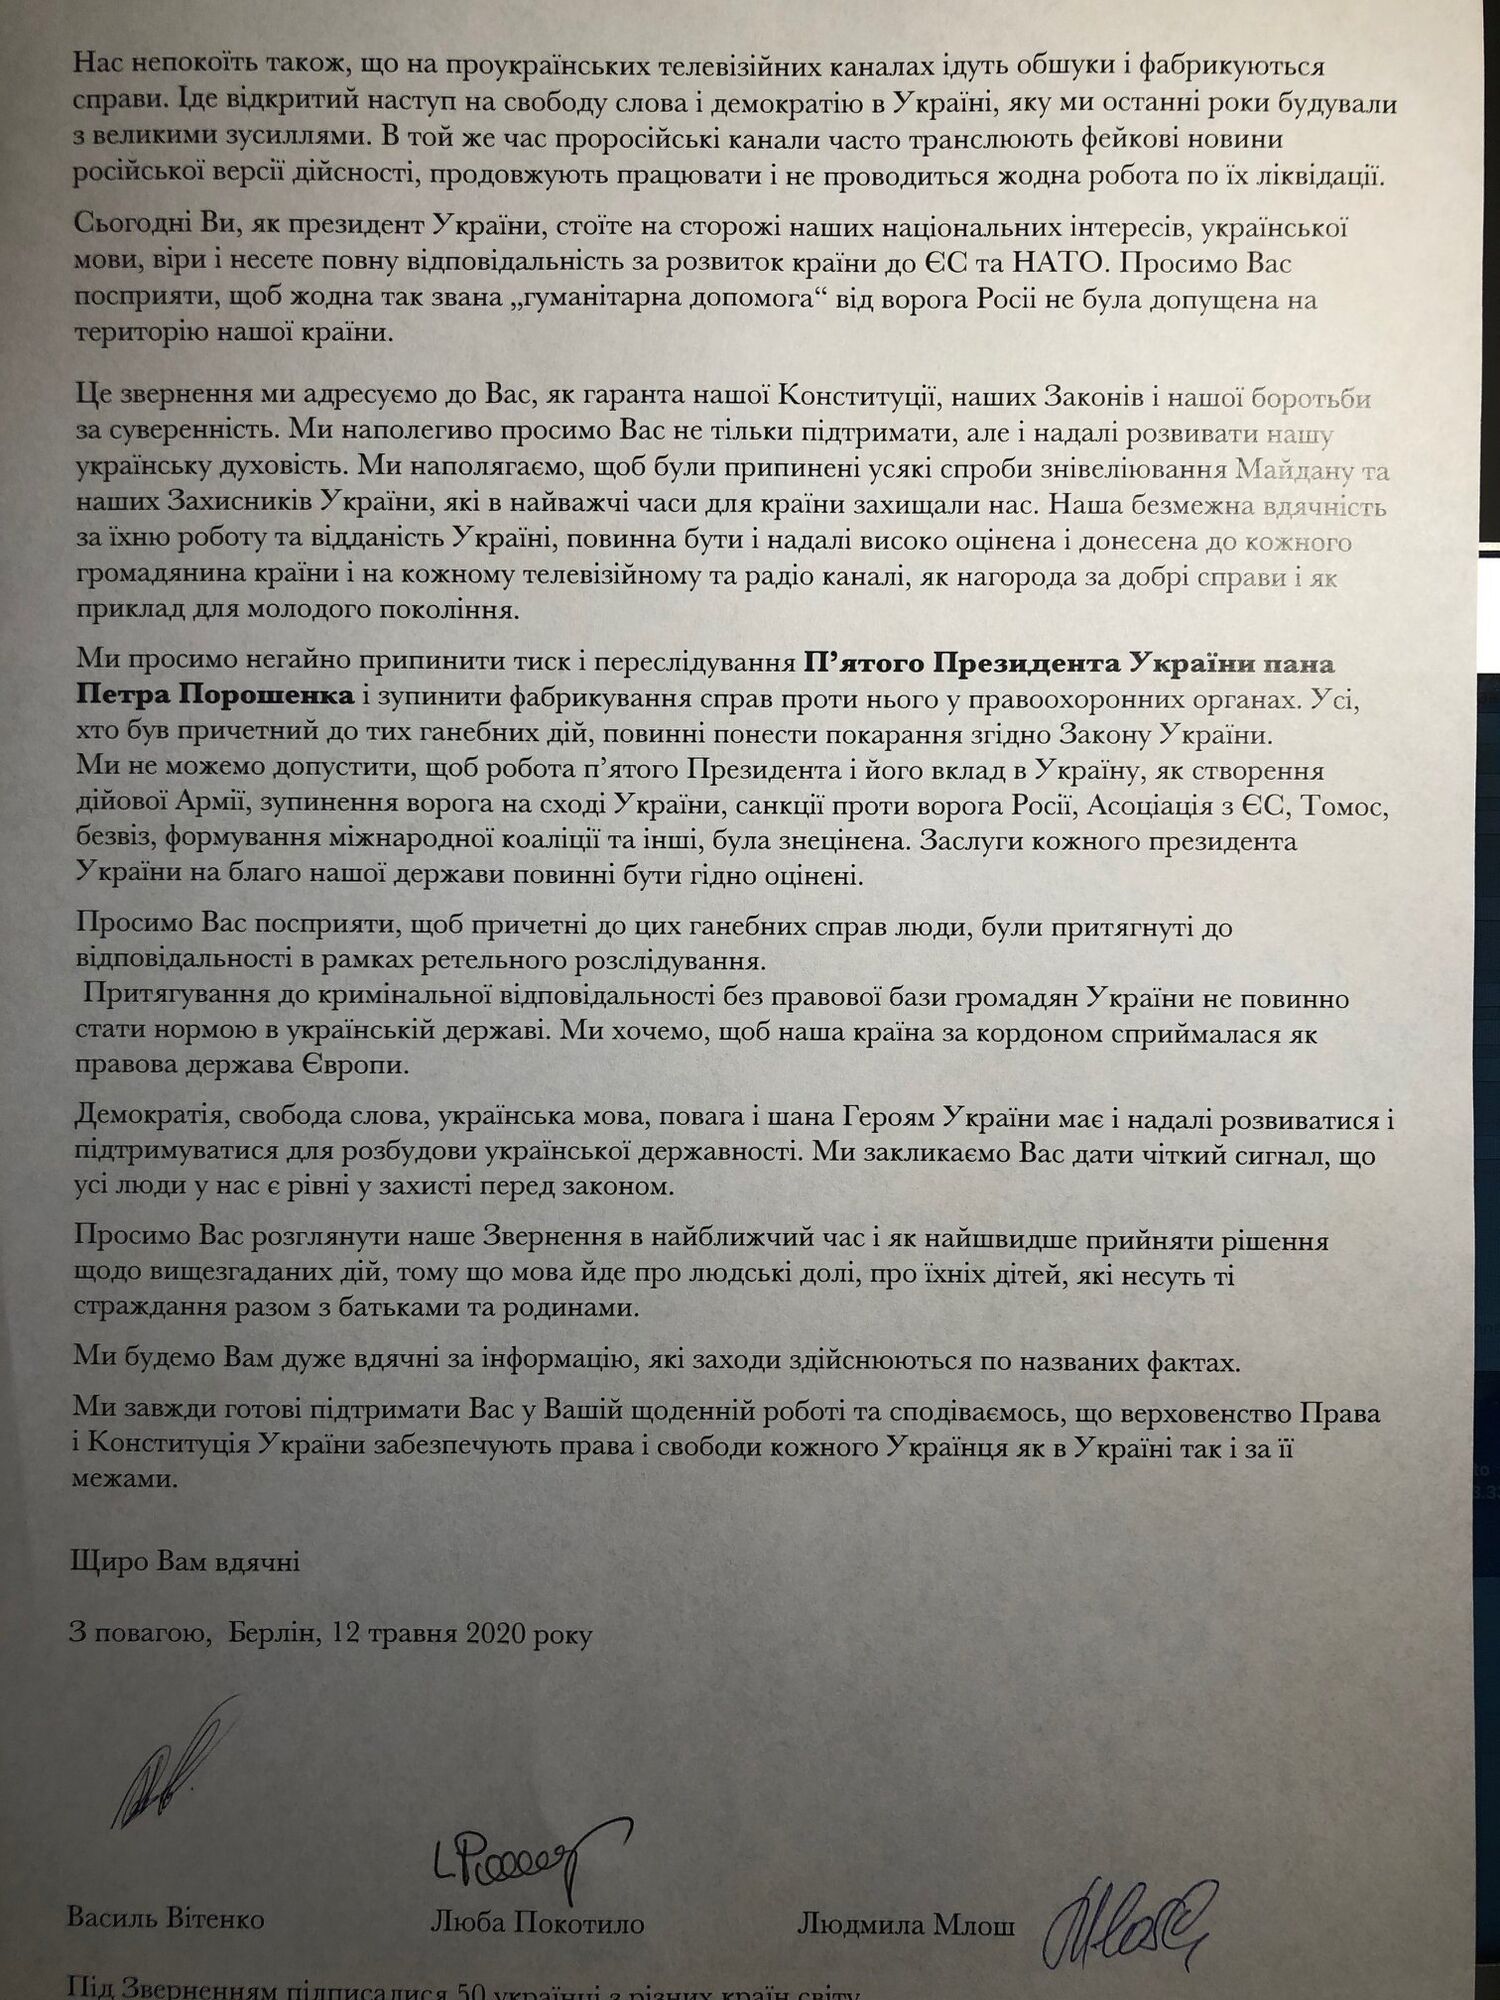 Діаспора закликала владу припинити переслідування Порошенка, Федини та В’ятровича